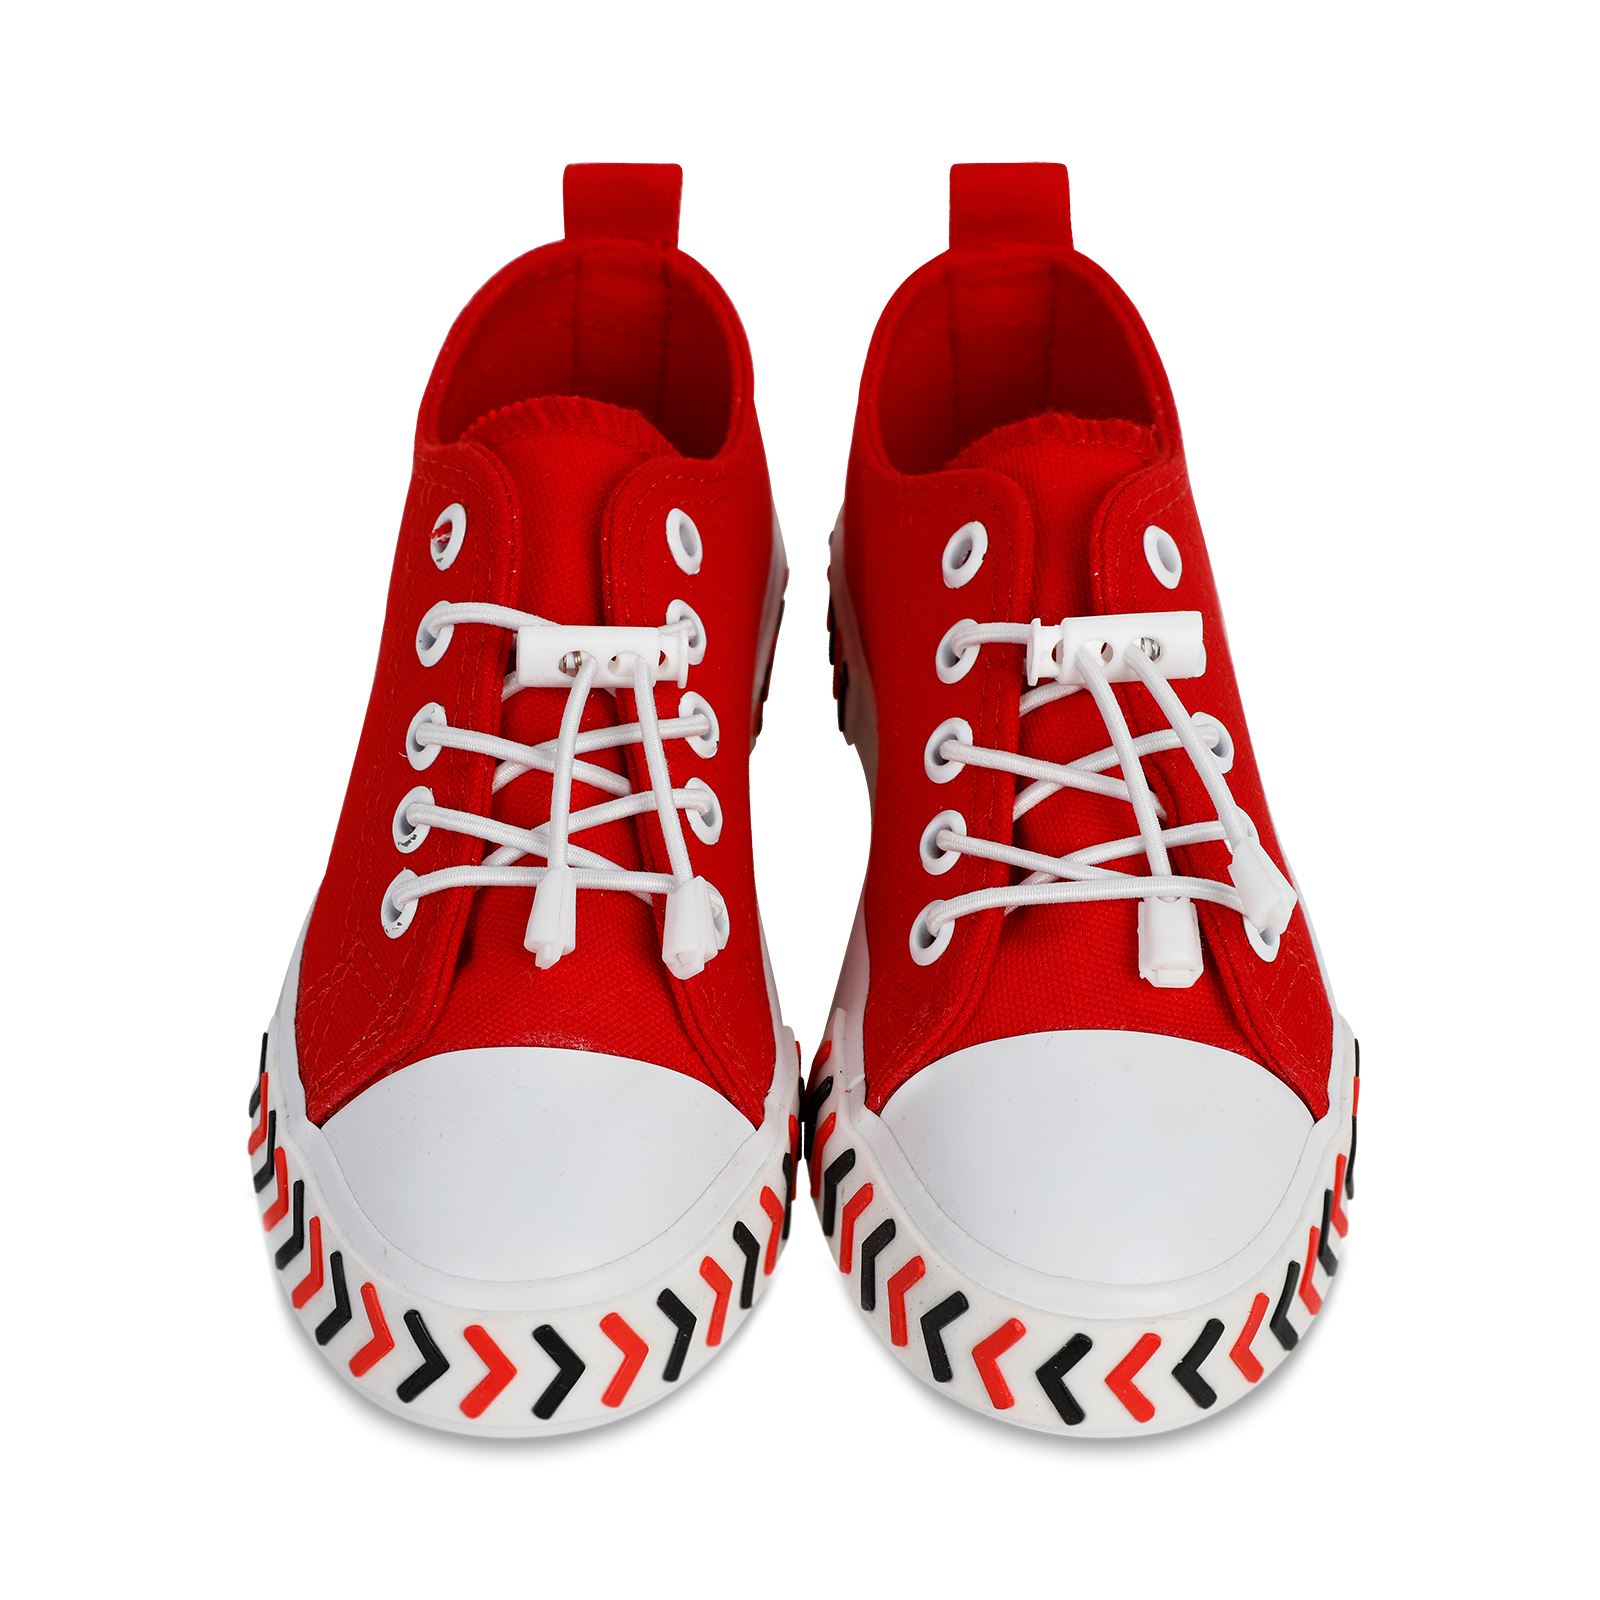 Civil Boys Erkek Çocuk Spor Ayakkabı 31-35 Numara Kırmızı